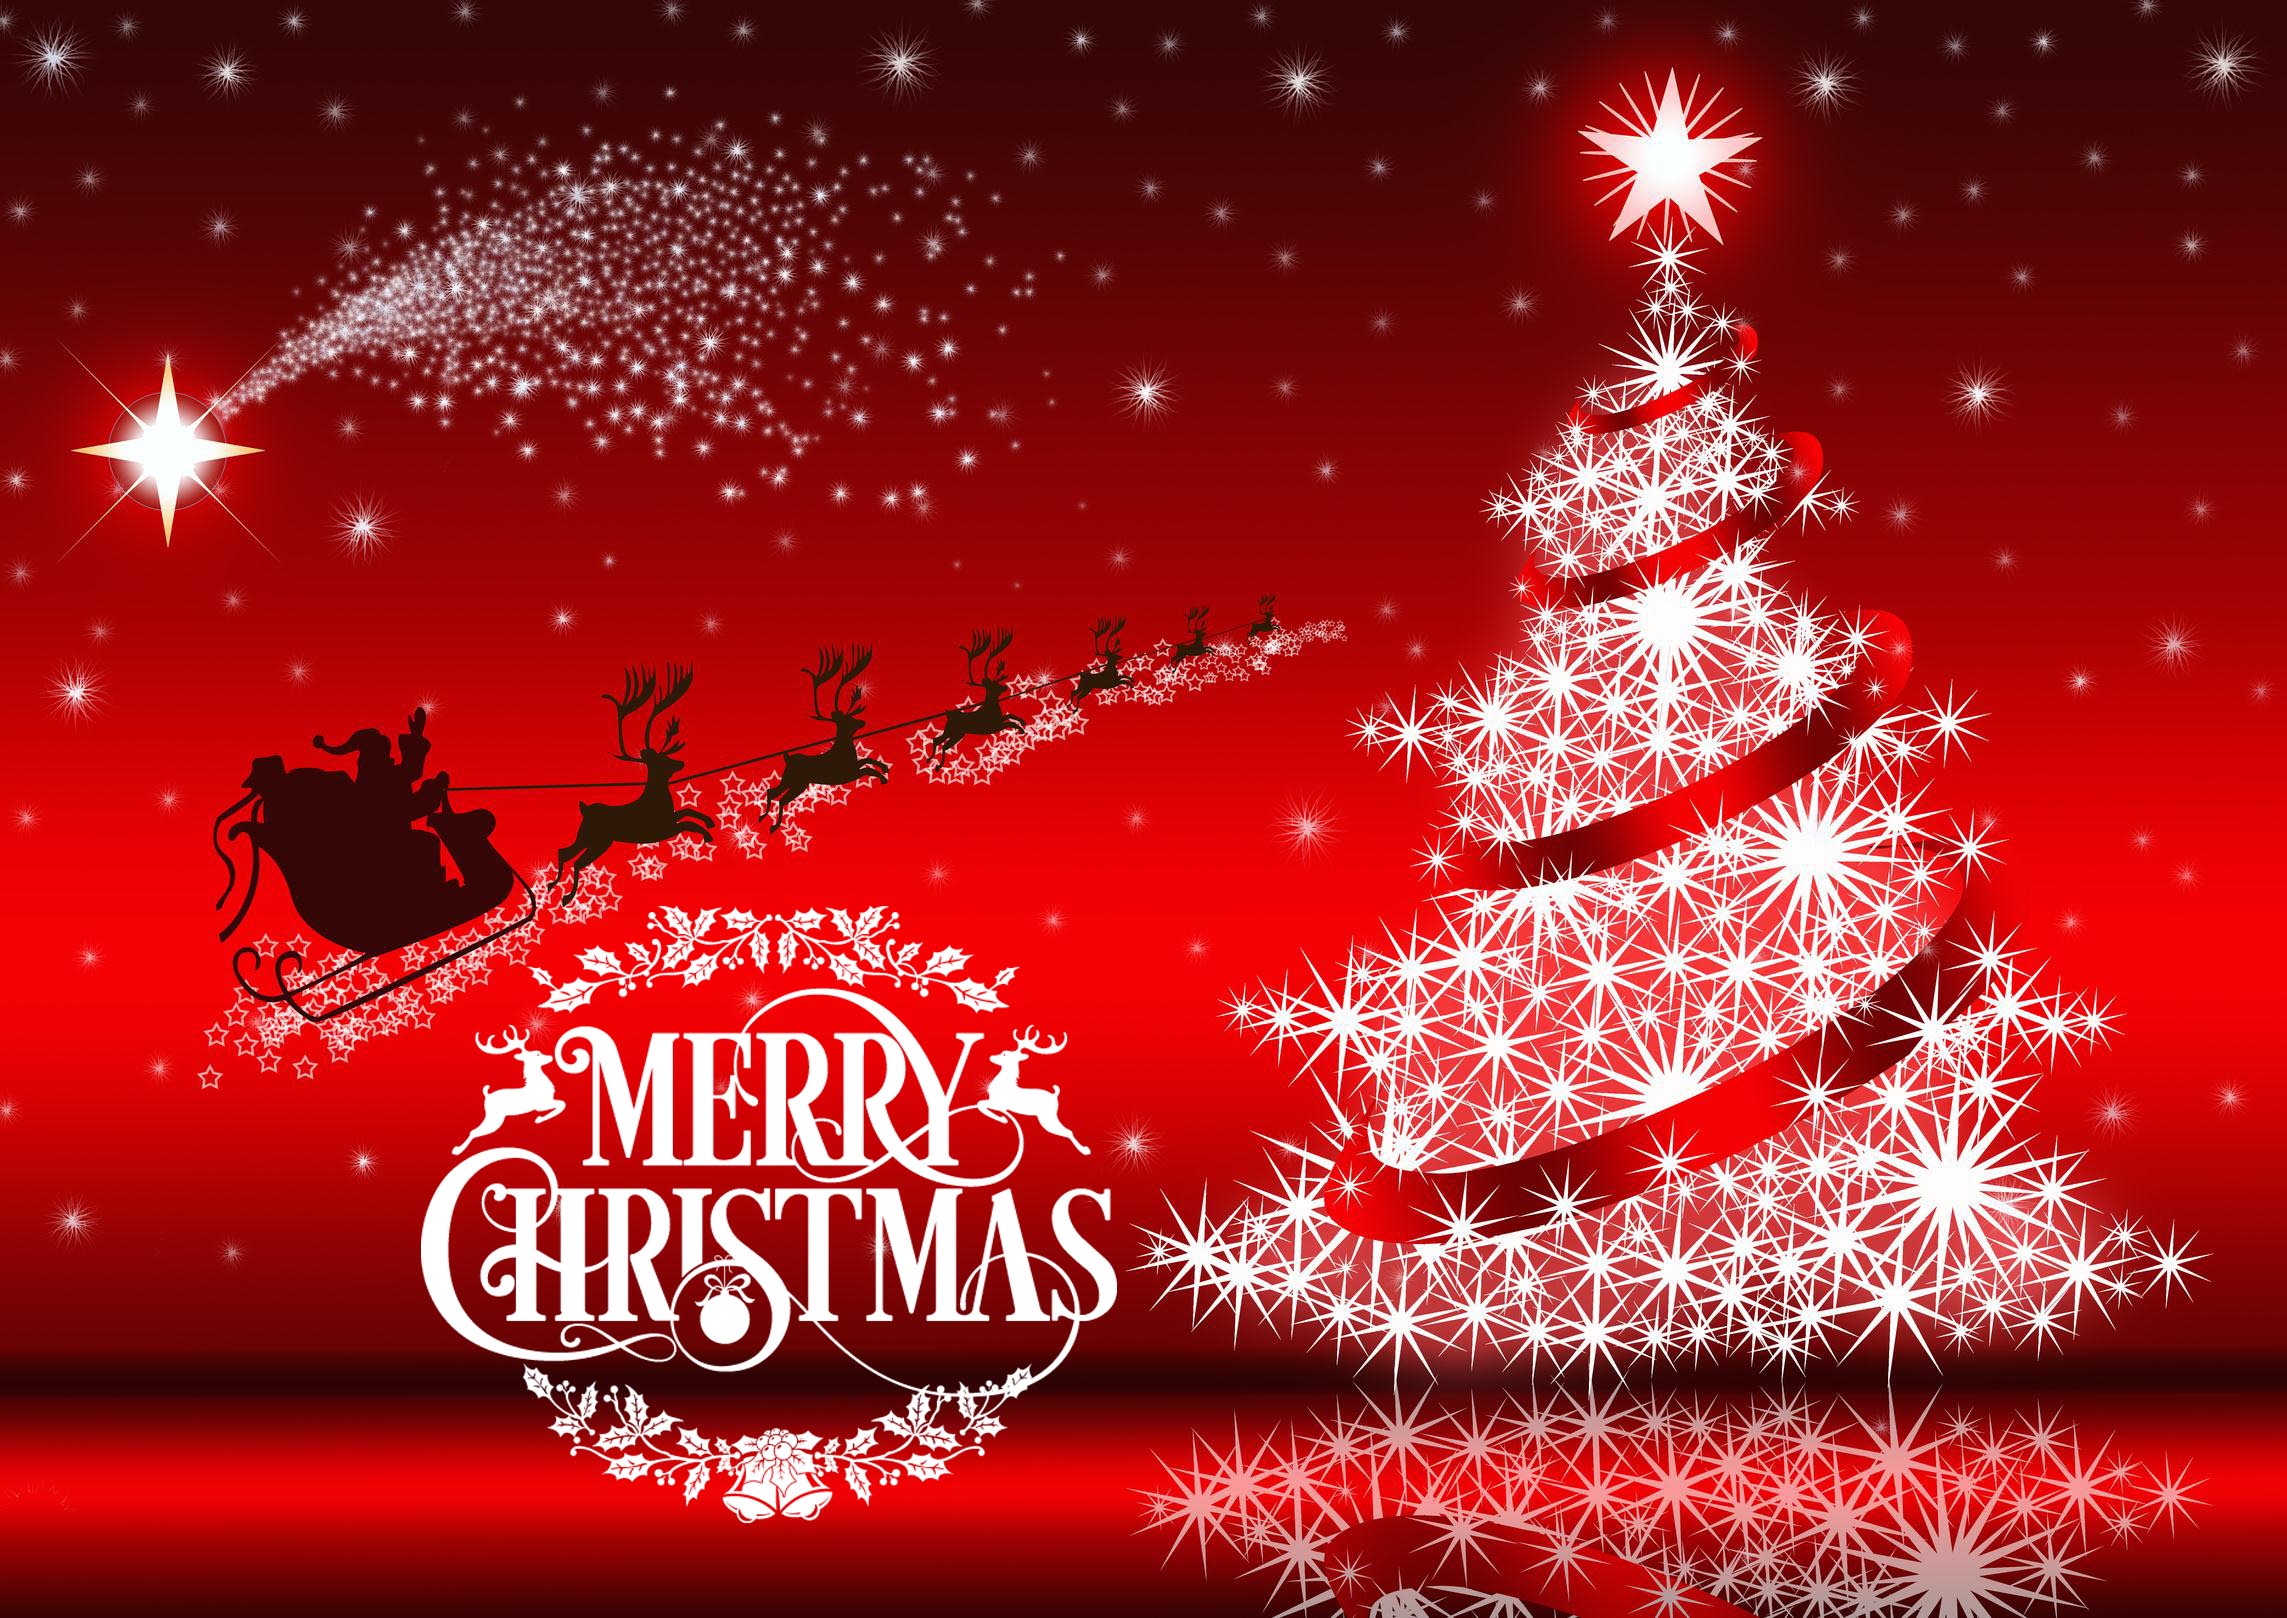 deseos de navidad fondos de pantalla,decoración navideña,texto,árbol de navidad,nochebuena,f te